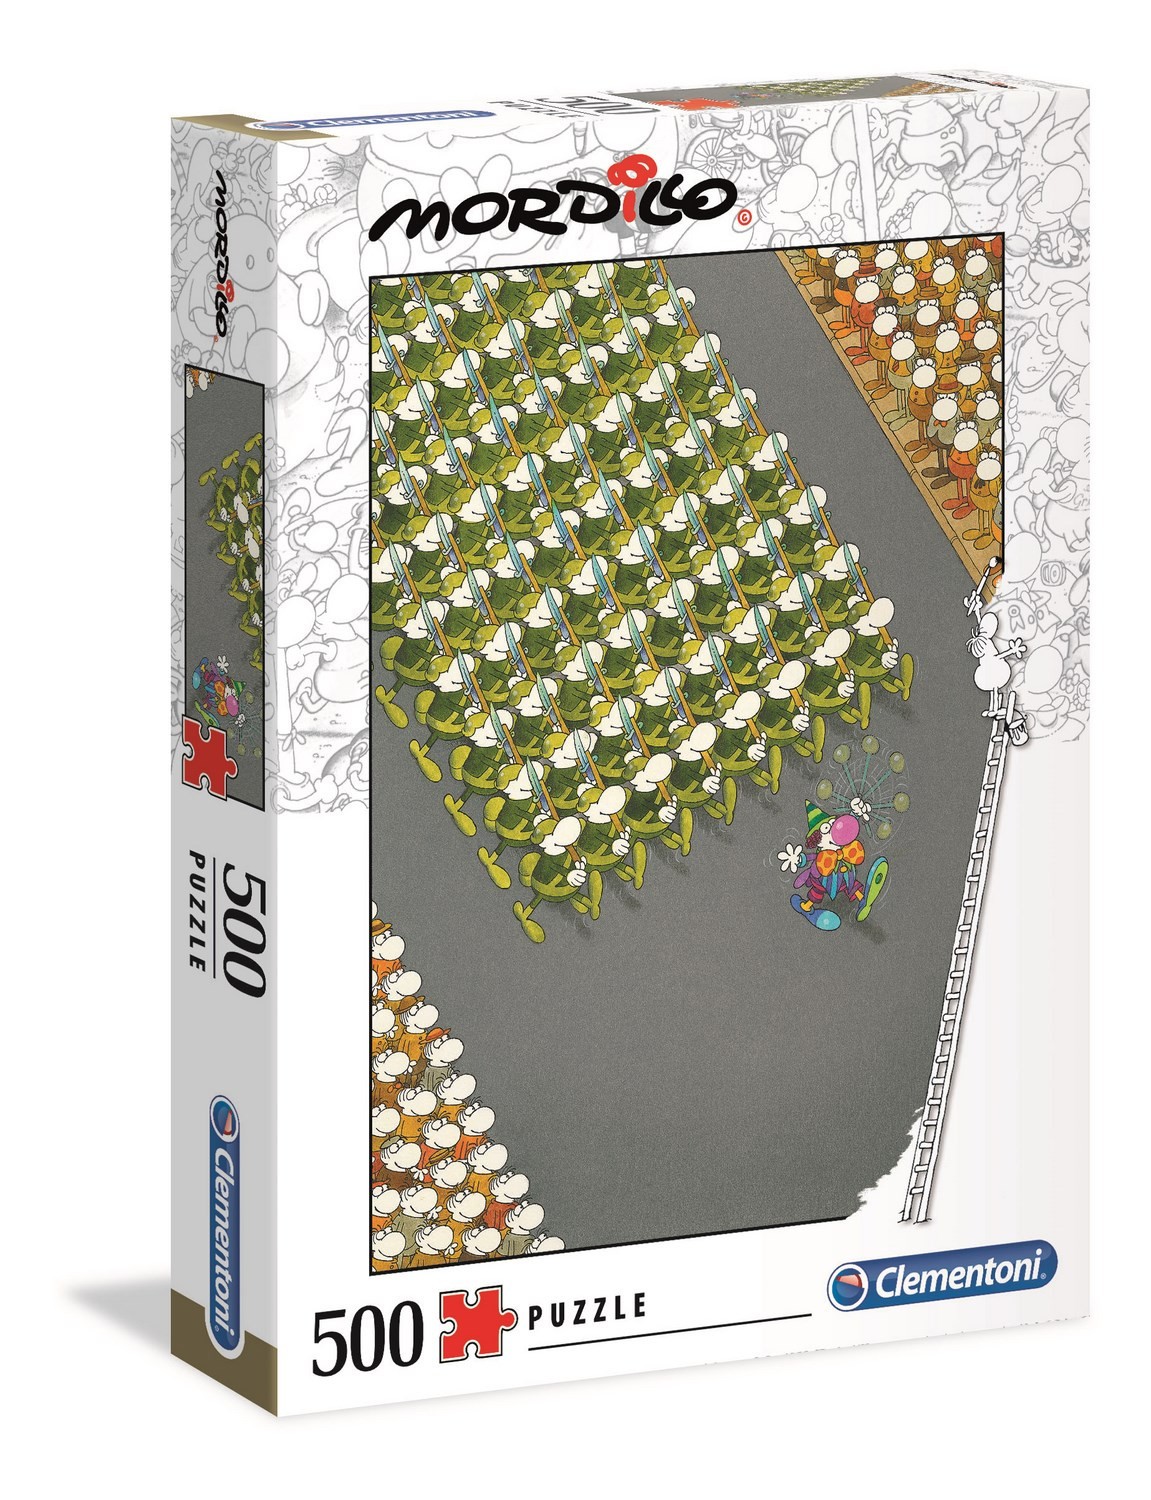  Clementoni Puzzle Mordillo 500 pièces - The March- - Puzzle